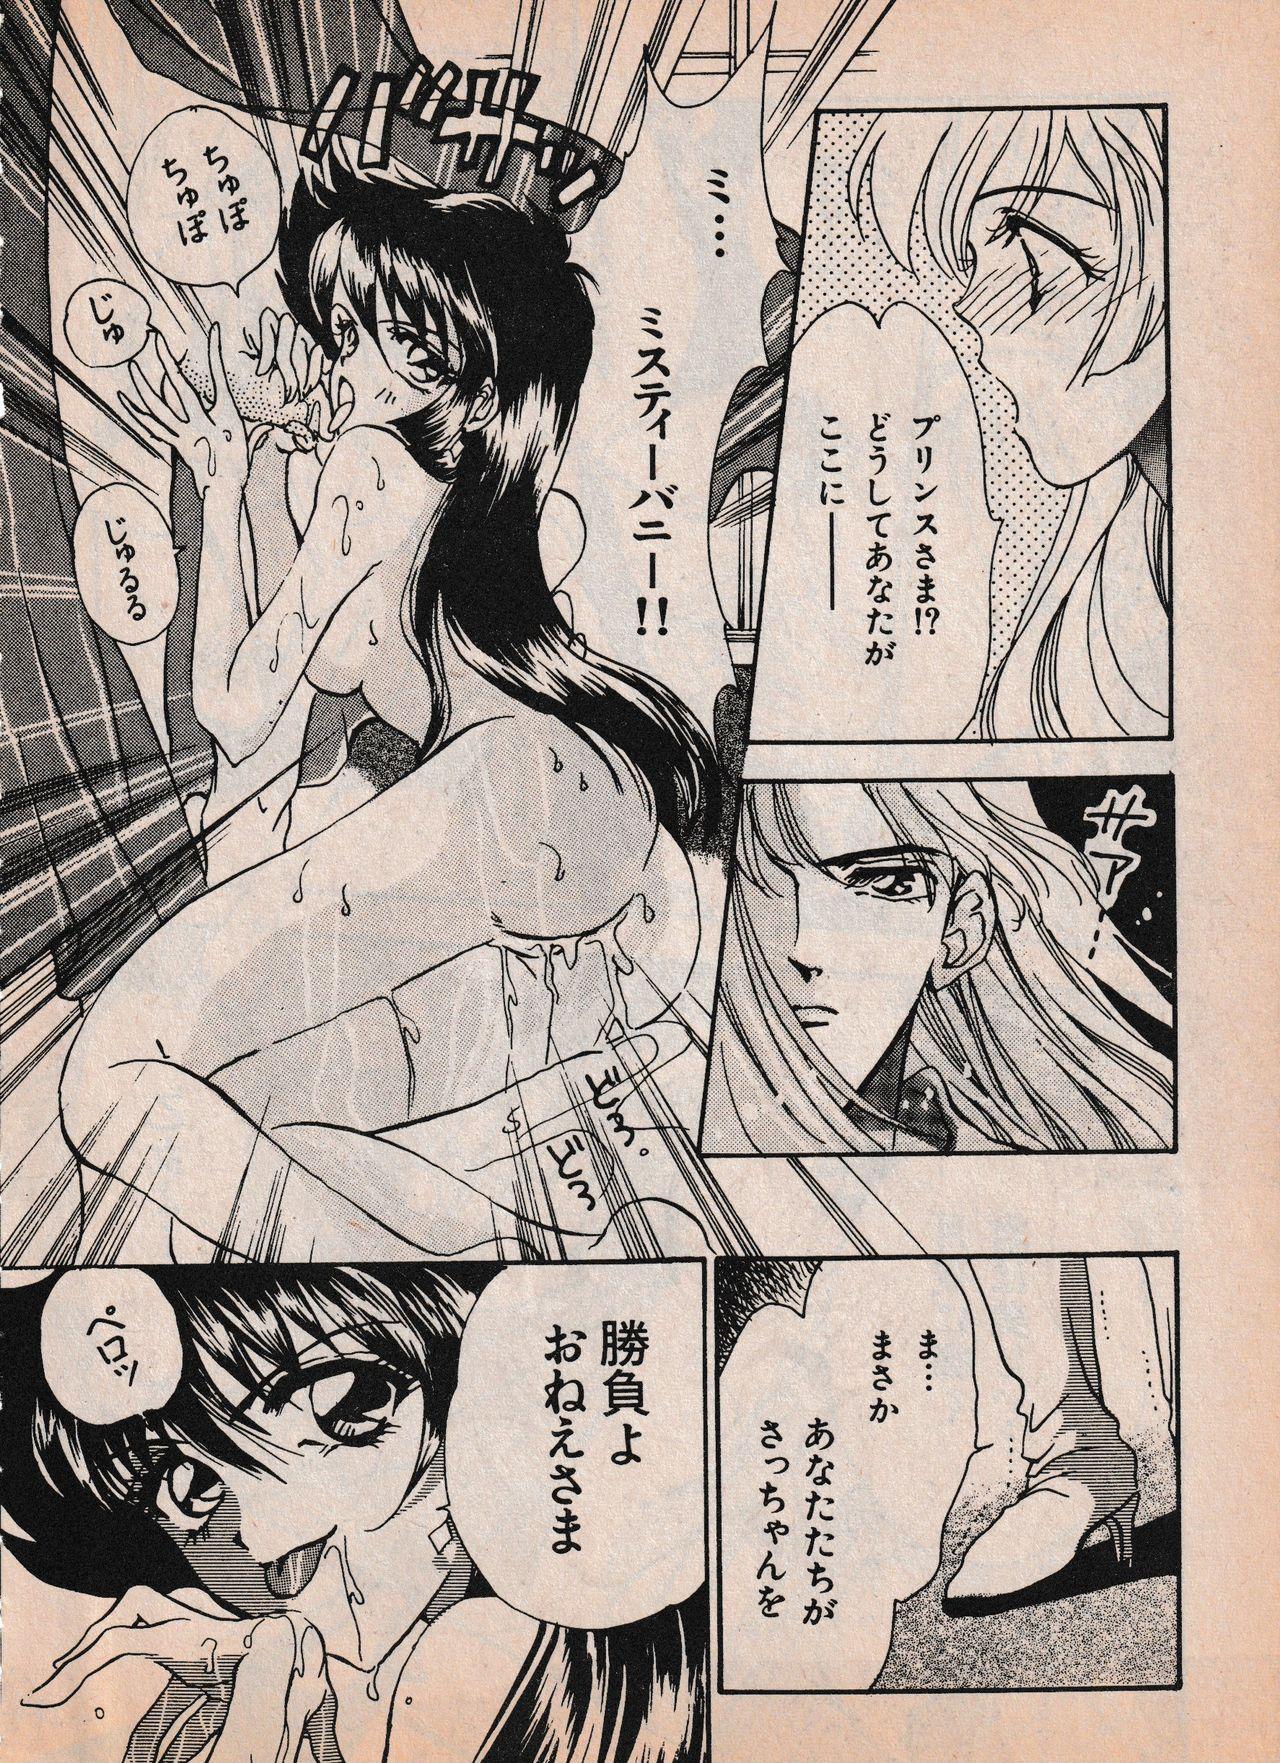 Sailor X vol. 4 - Sailor X vs. Cunty Horny! 99